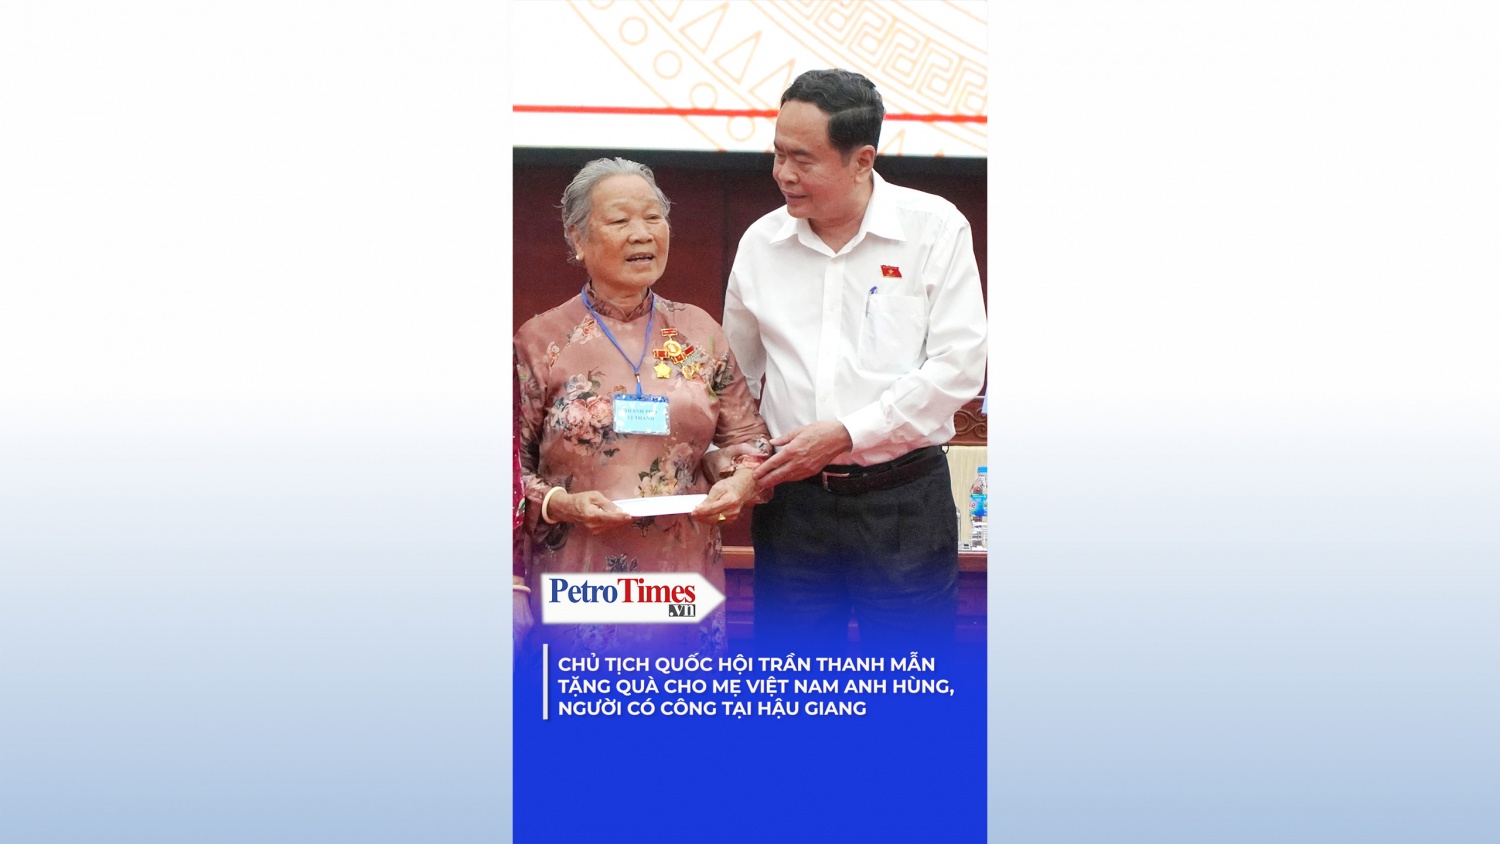 Chủ tịch Quốc hội Trần Thanh Mẫn tặng quà cho Mẹ Việt Nam anh hùng, người có công tại Hậu Giang